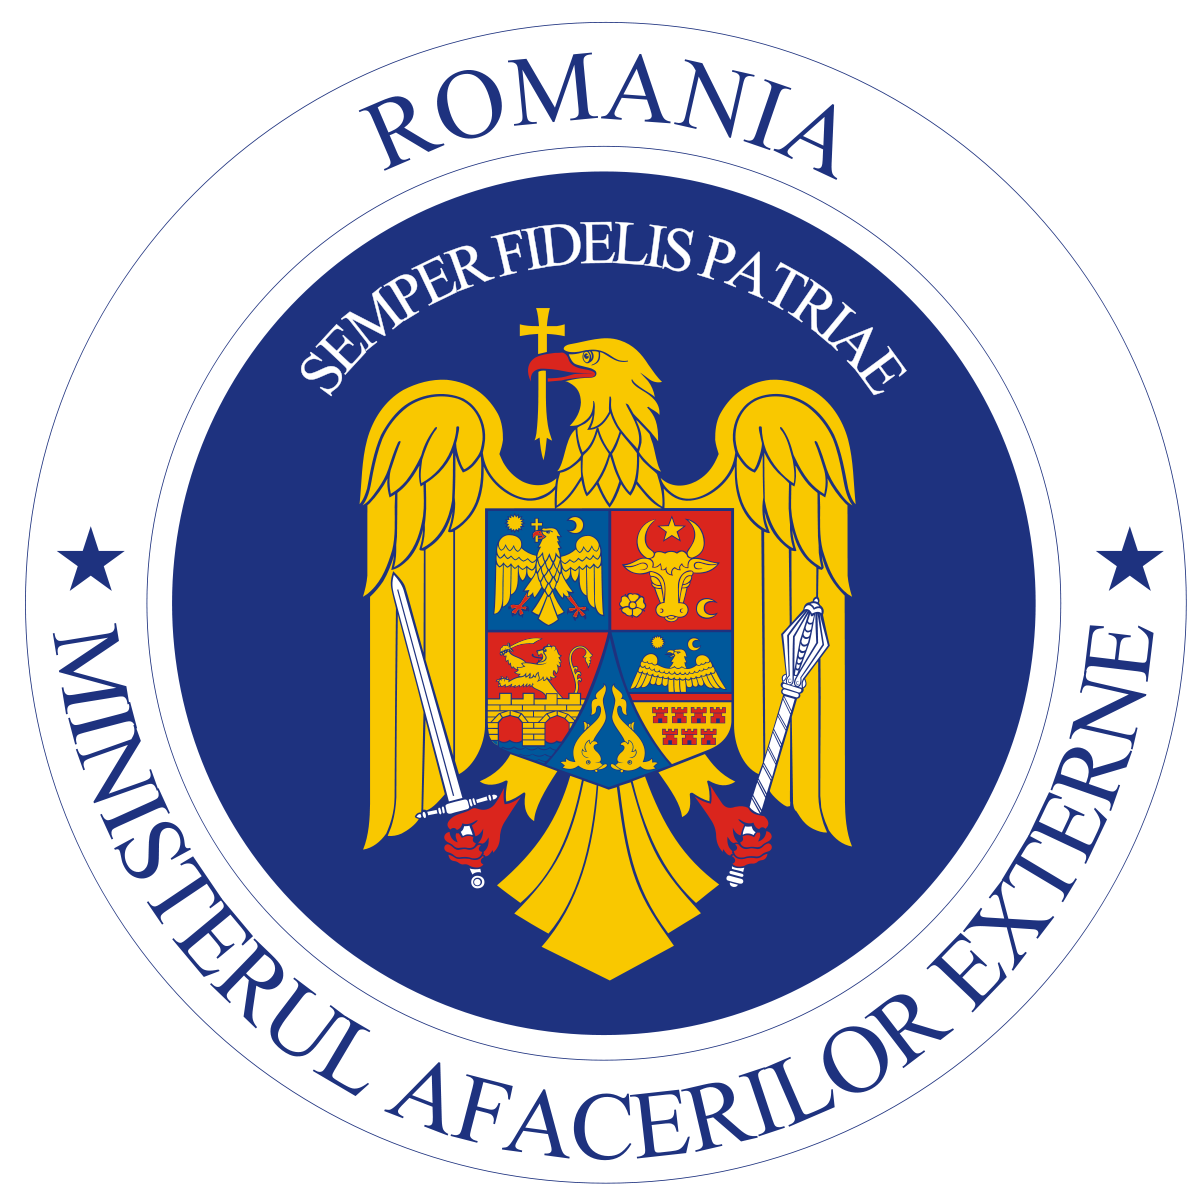 Lista cu Consuli Generali ai României plimbată de la Ana la Caiafa